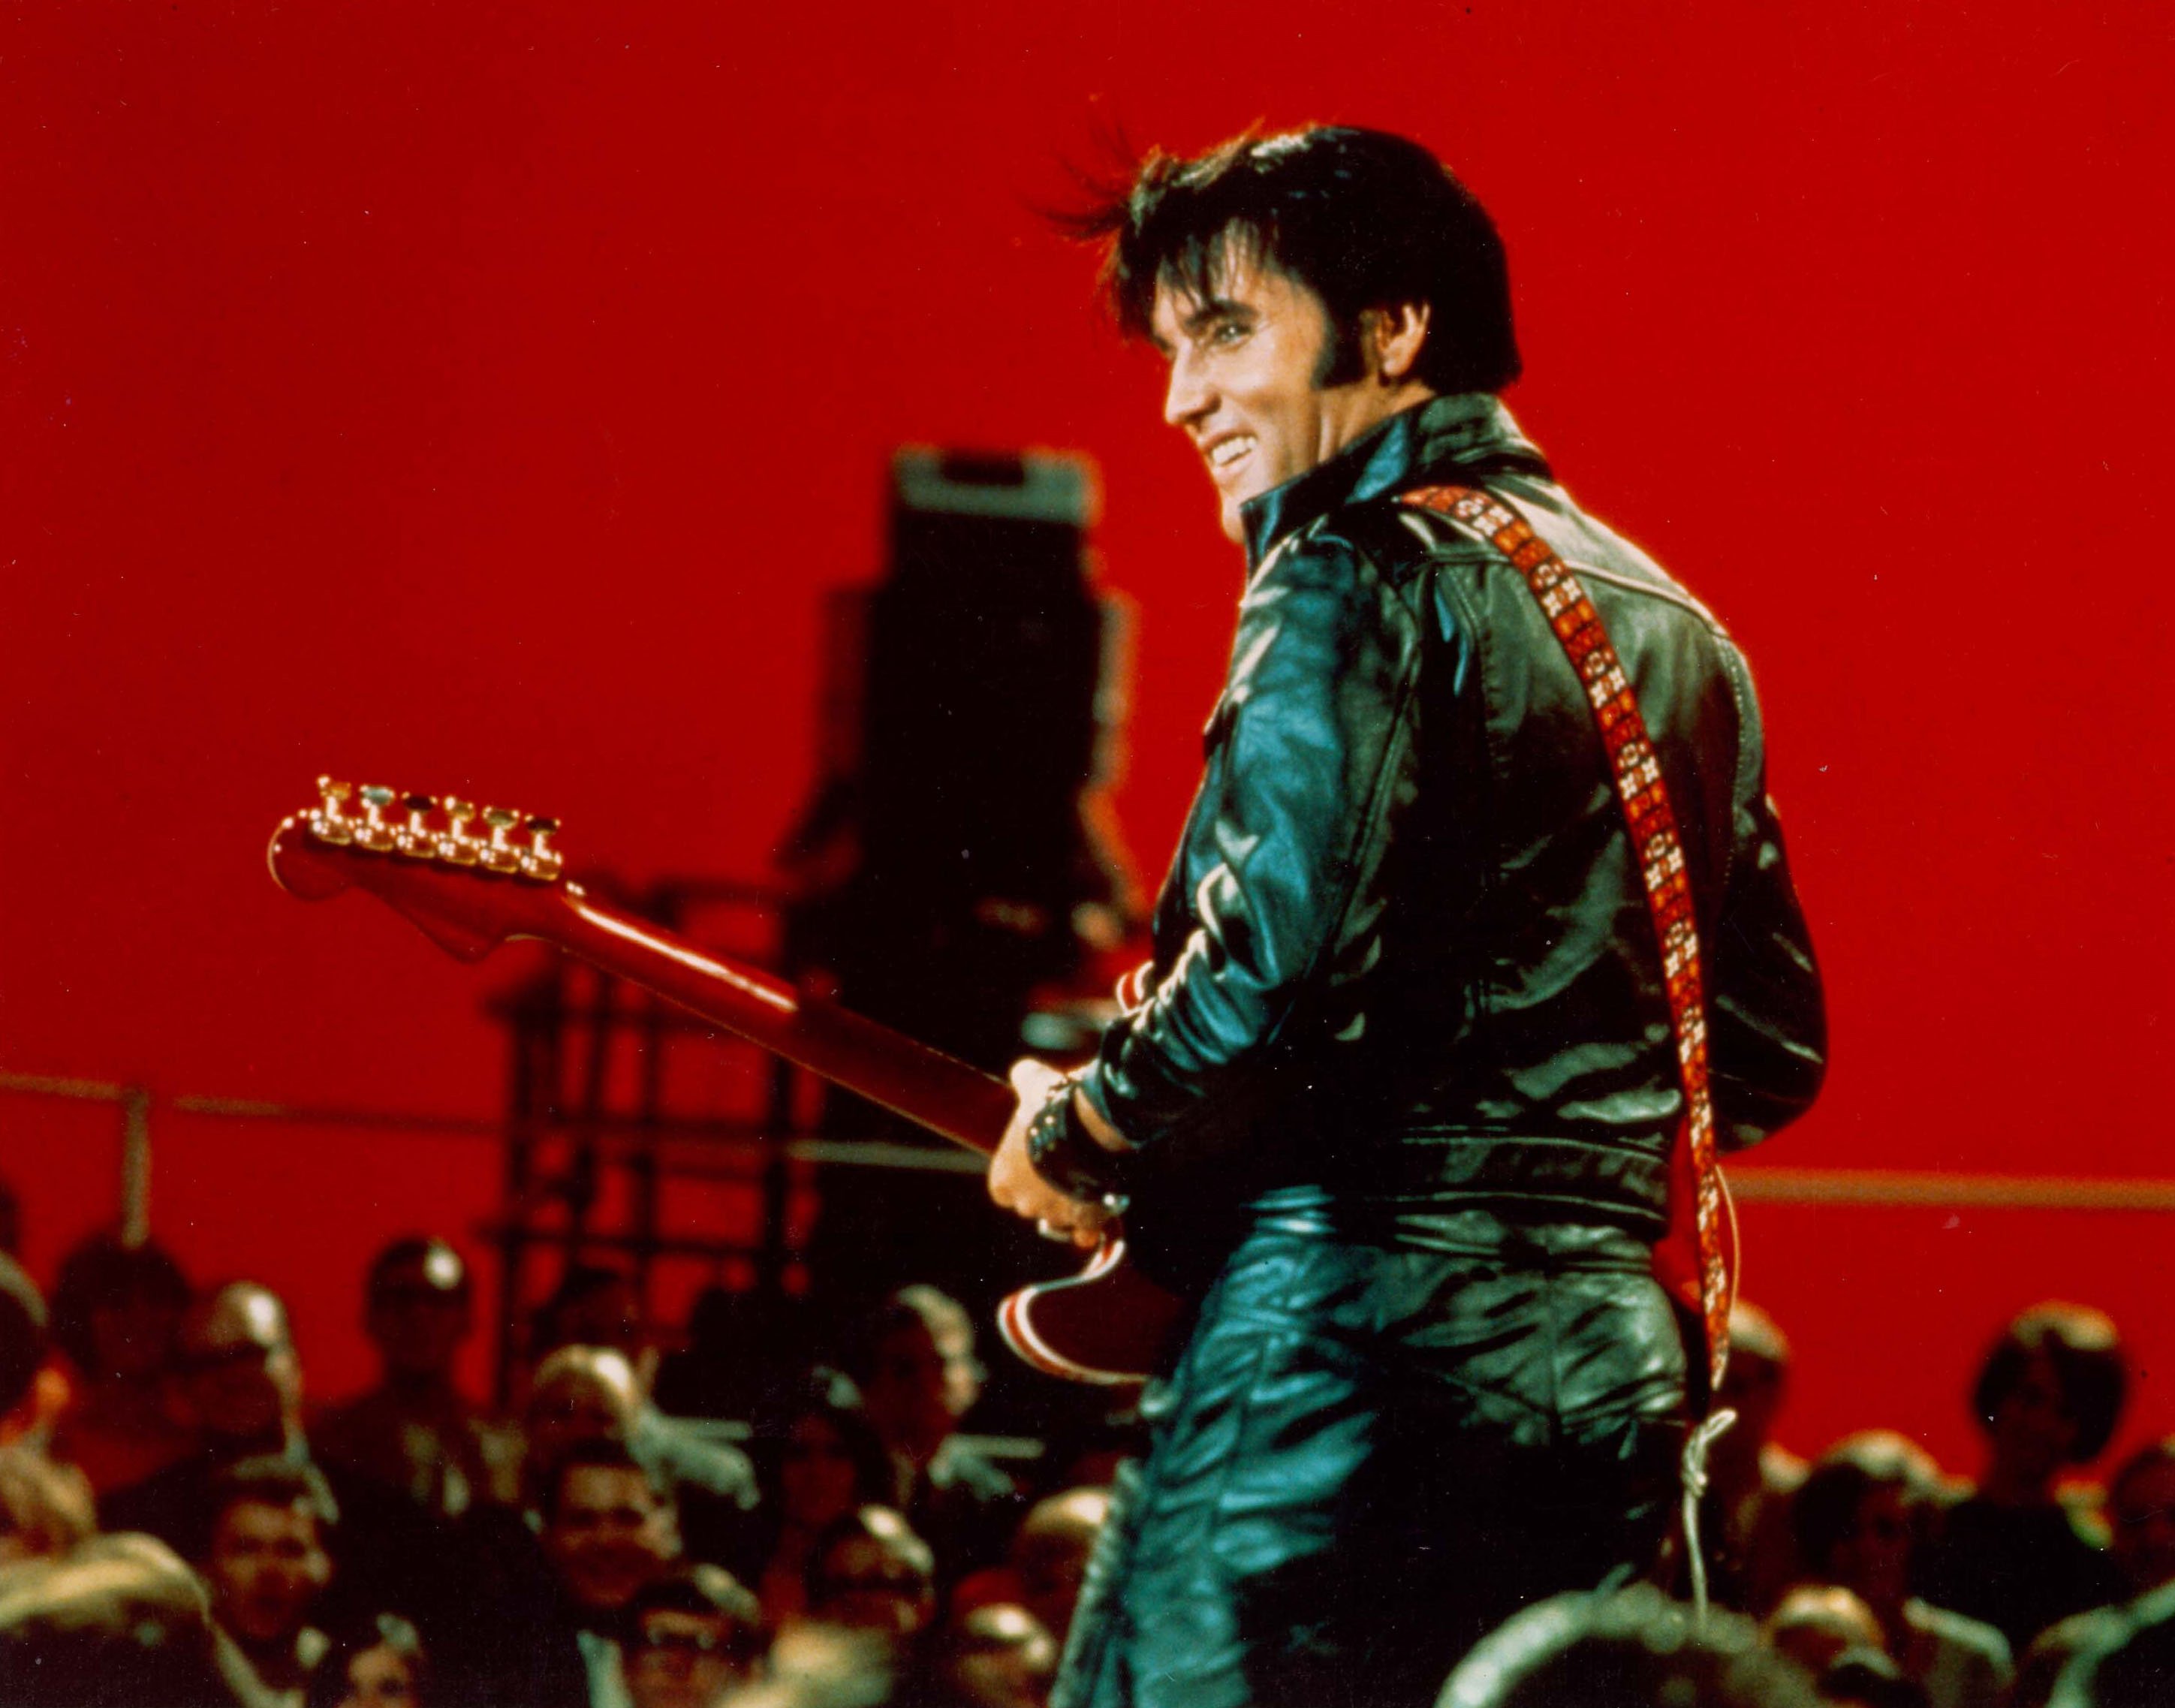 "Heartbreak Hotel" singer Elvis Presley in a leather jacket